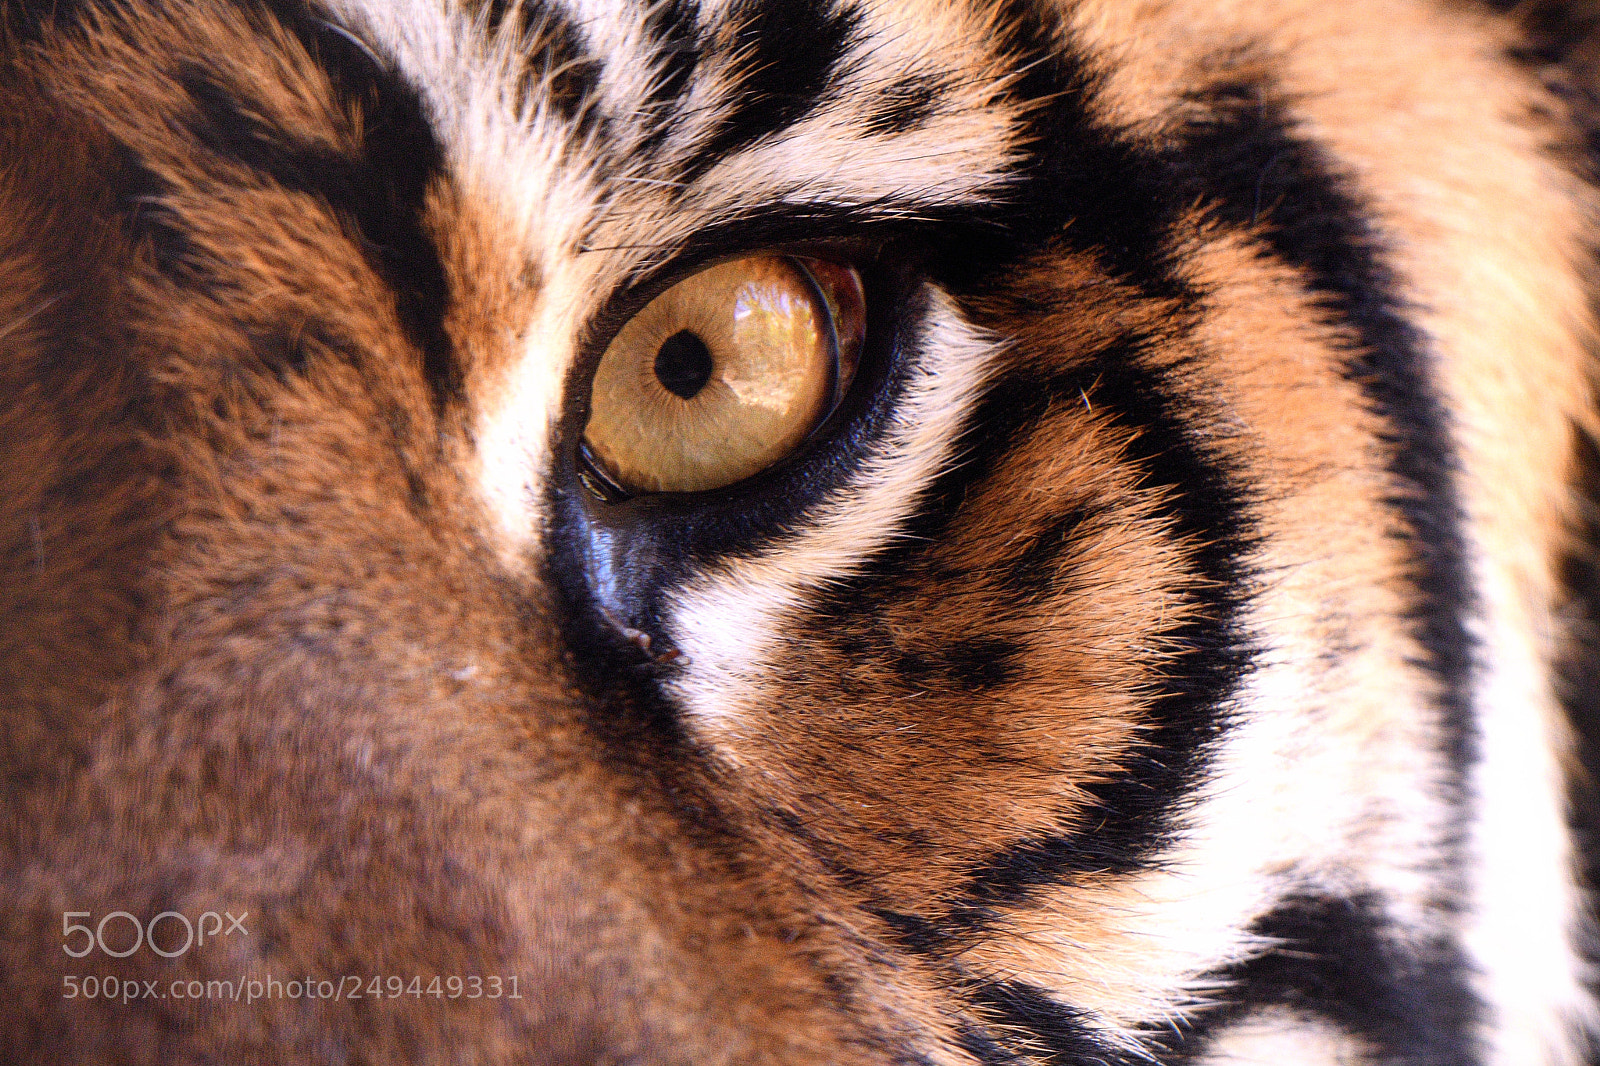 Nikon D500 sample photo. Sumatran tiger staring into photography